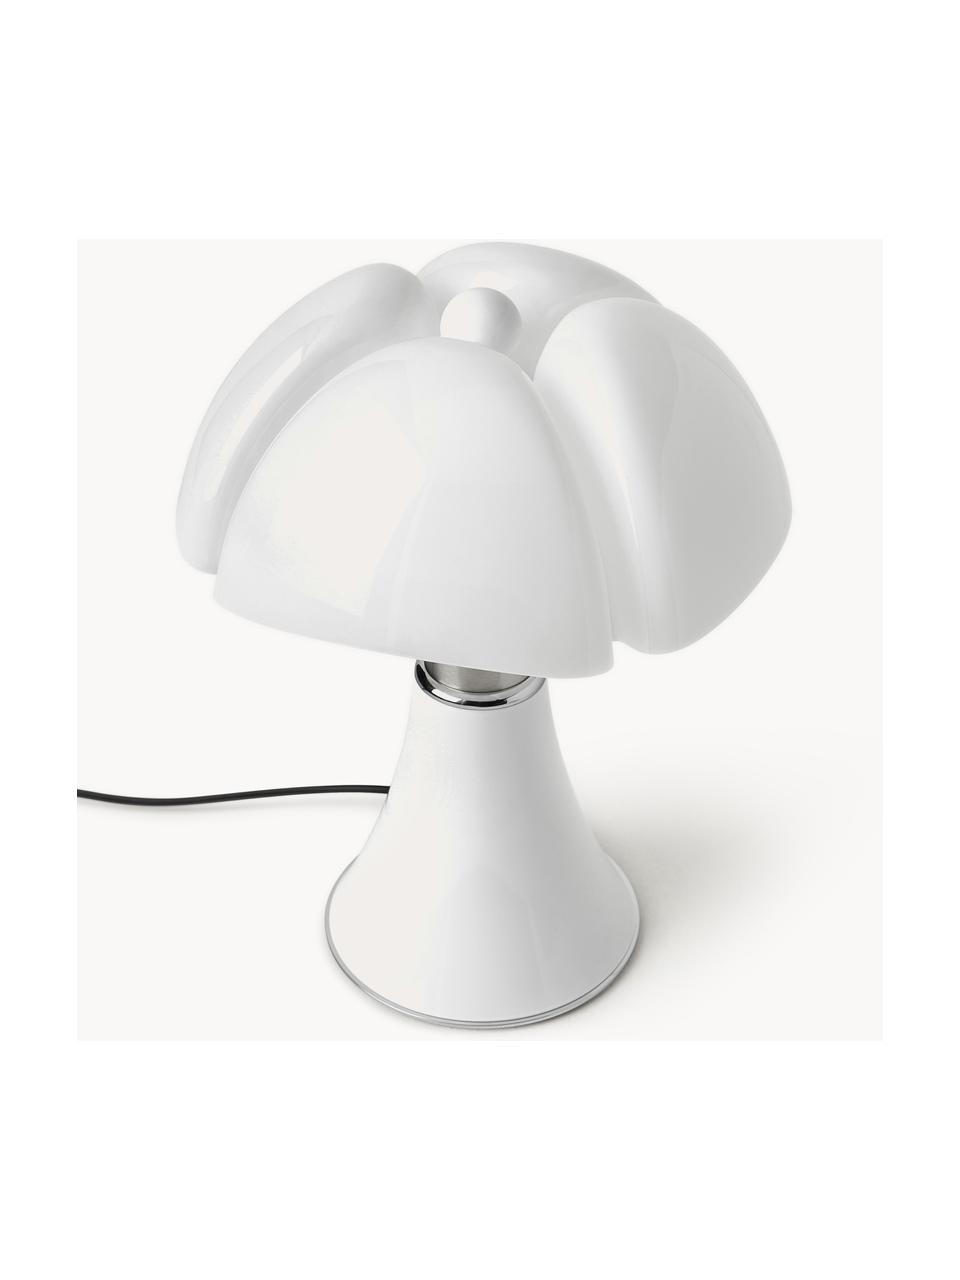 Lampa stołowa LED z funkcją przyciemniania Pipistrello, Stelaż: metal, aluminium, lakiero, Biały, matowy, Ø 27 x W 35 cm